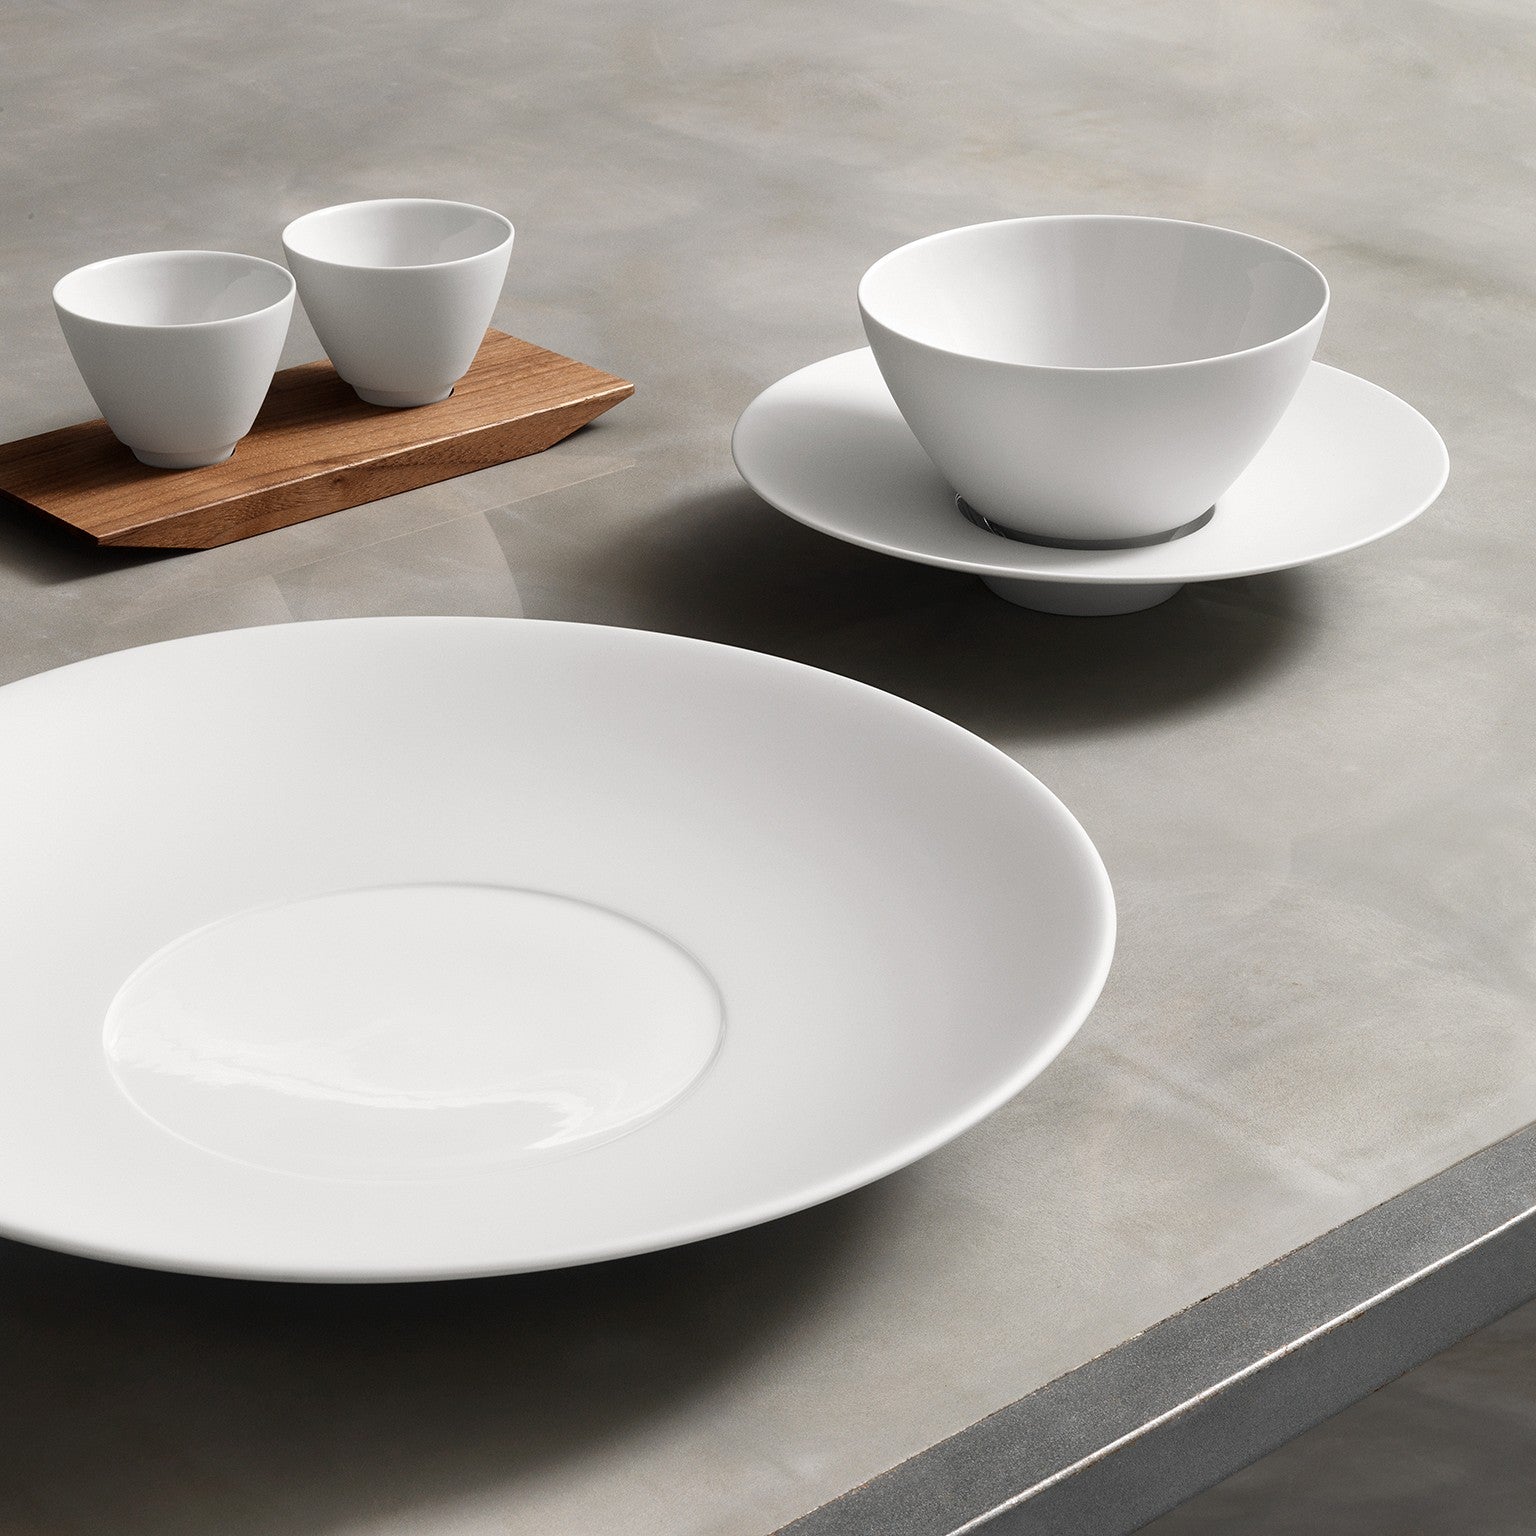 Eine Auswahl an schlichtem weißem Keramikgeschirr, darunter ein großer Teller, zwei Schüsseln unterschiedlicher Größe und ein Paar Tassen, ordentlich angeordnet auf einer glatten grauen Oberfläche mit einem Holzbrett unter den Tassen.